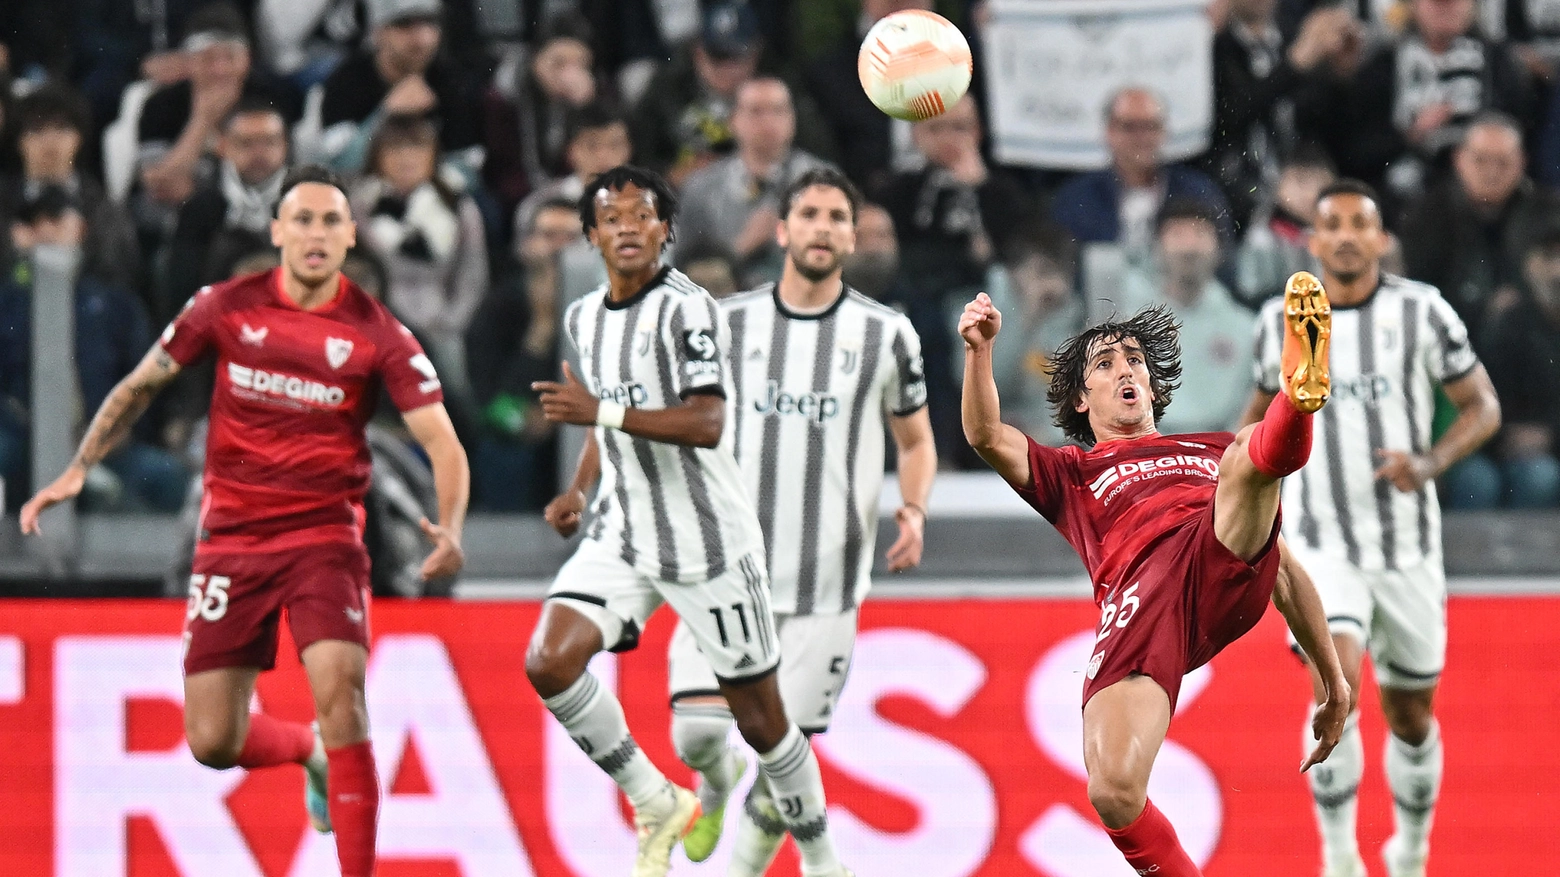 Europa League, Juventus-Siviglia 1-1: Gatti salva la Signora al 96'